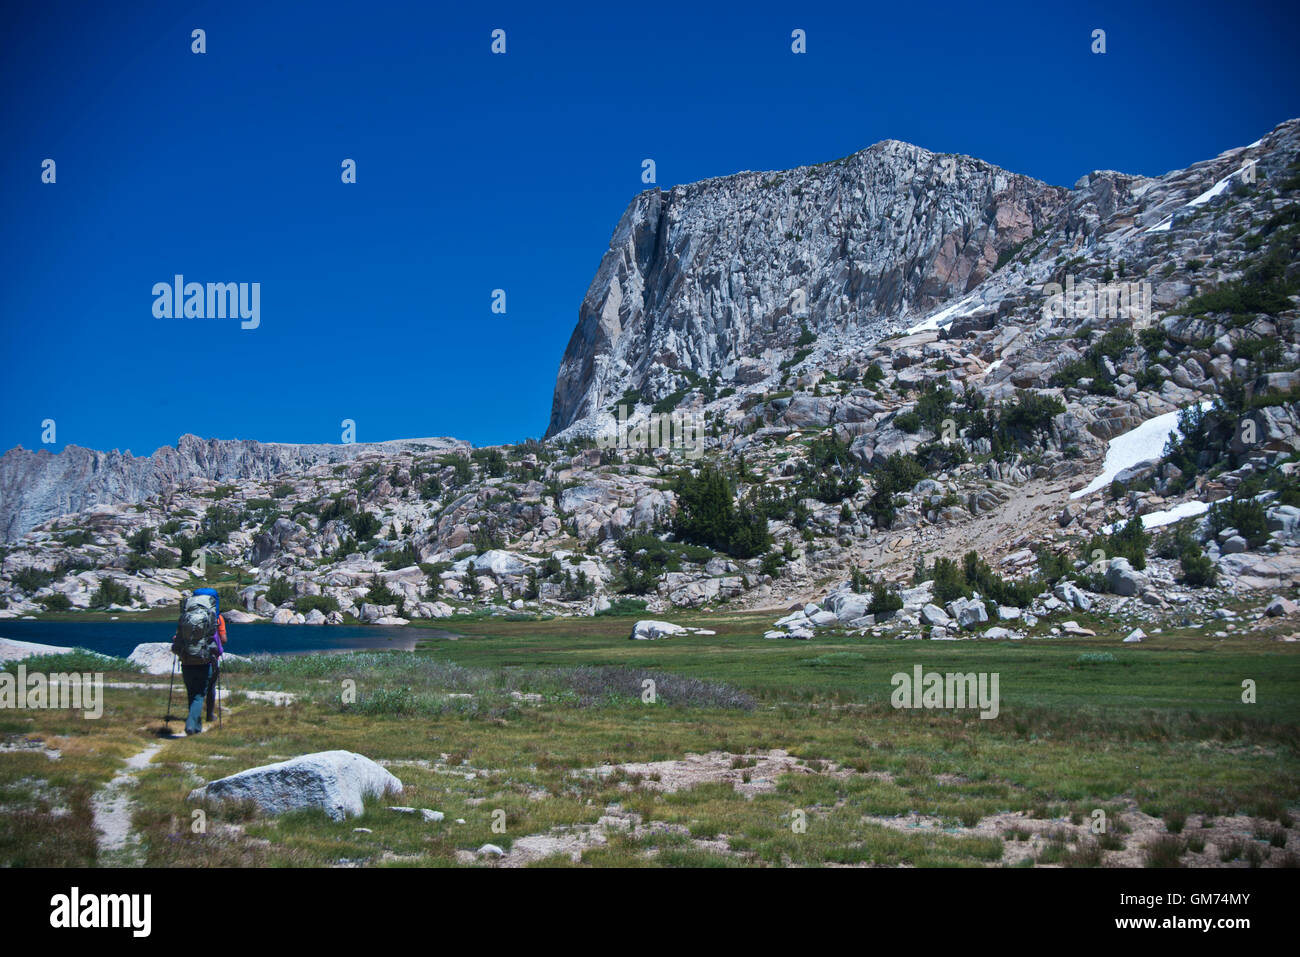 Les randonneurs près de Snow Lake dans le Yosemite Wilderness, Hoover & Humbolt-Toiyabe National Forest, CA Banque D'Images